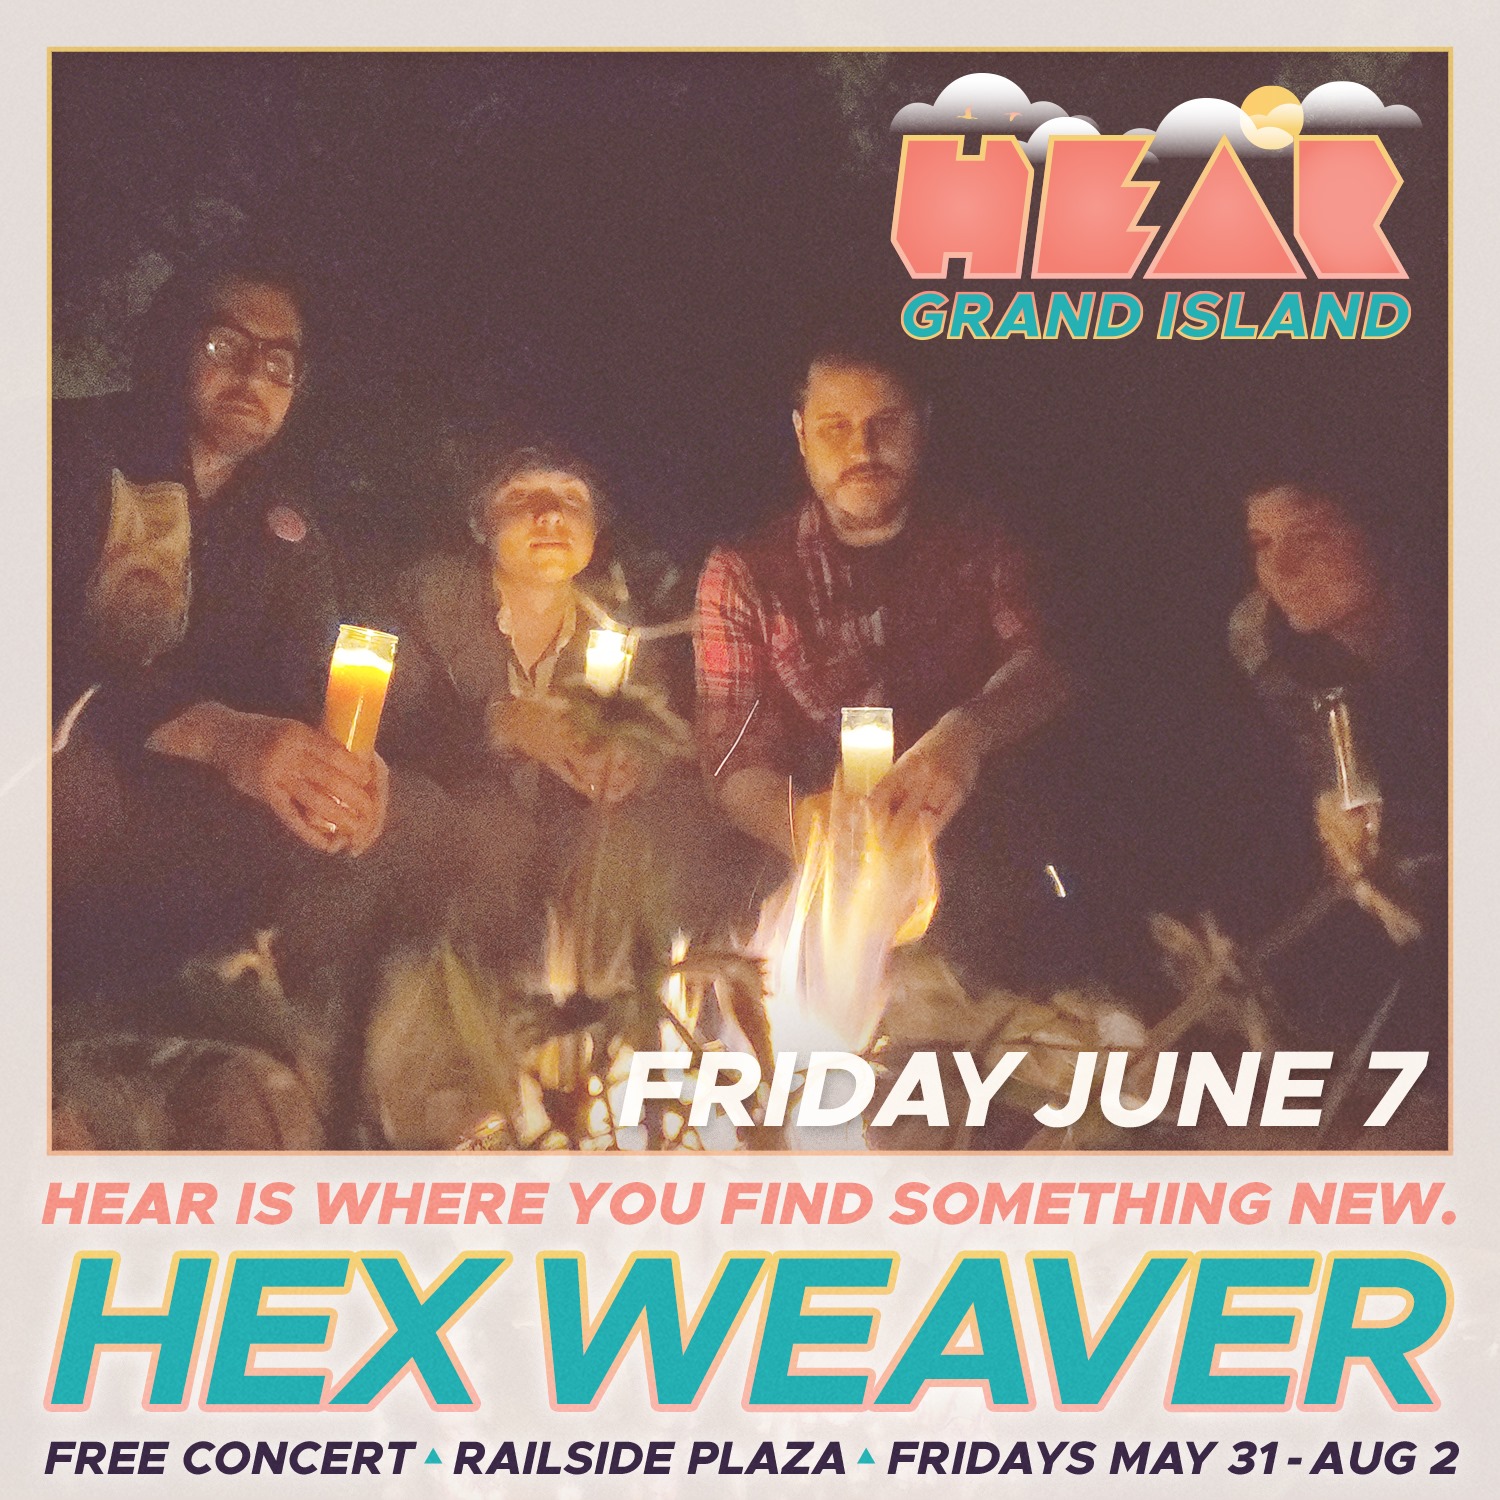 Hear Grand Island 2019 w/ The Fey, Hex Weaver, and Arrowleaf